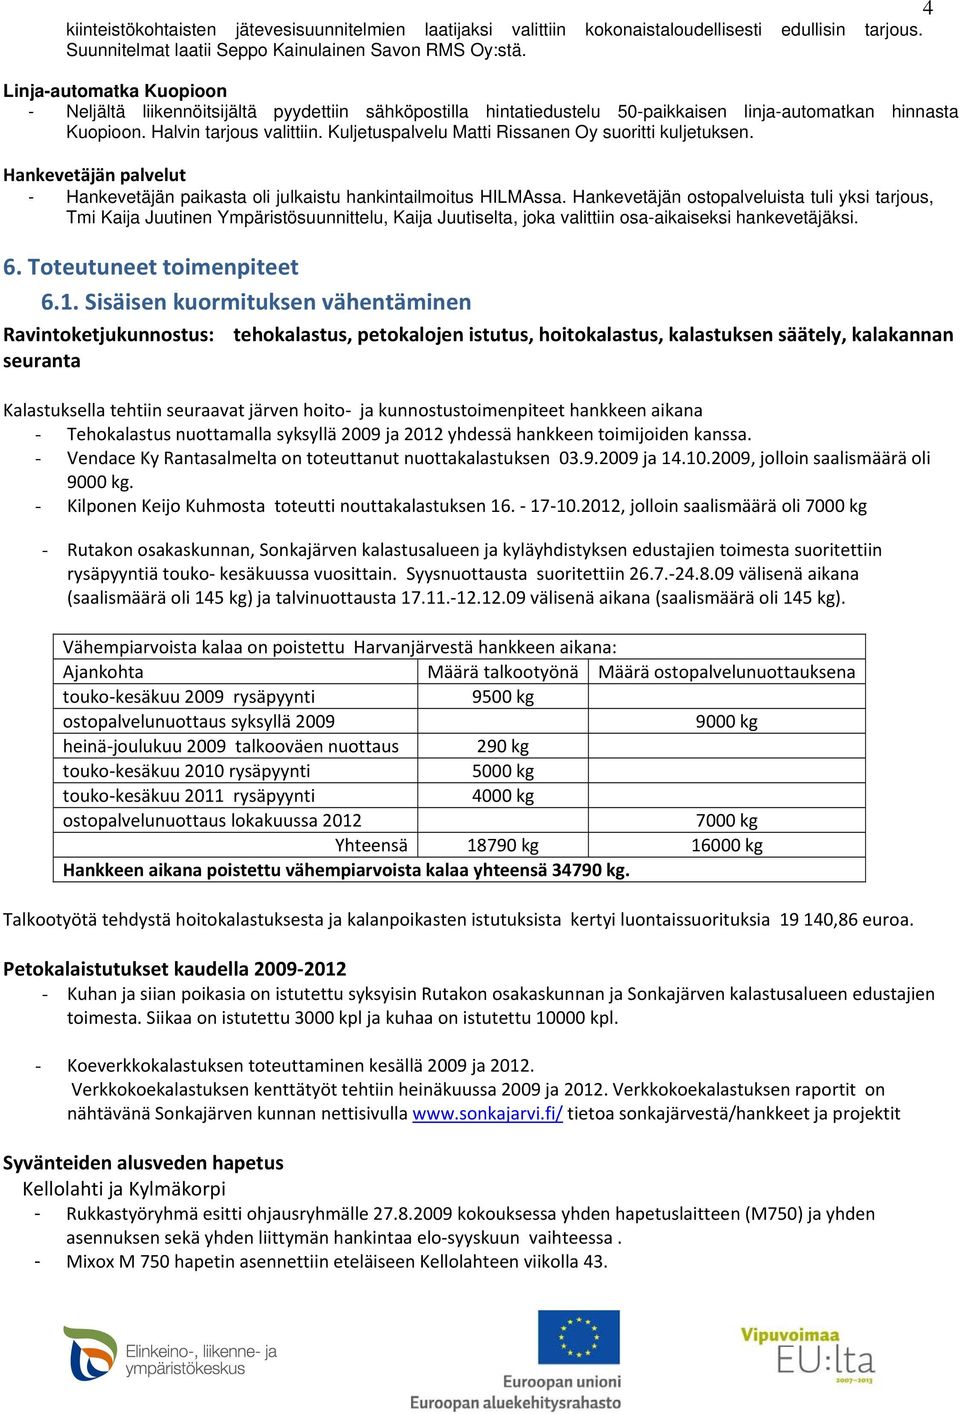 Kuljetuspalvelu Matti Rissanen Oy suoritti kuljetuksen. Hankevetäjän palvelut - Hankevetäjän paikasta oli julkaistu hankintailmoitus HILMAssa.